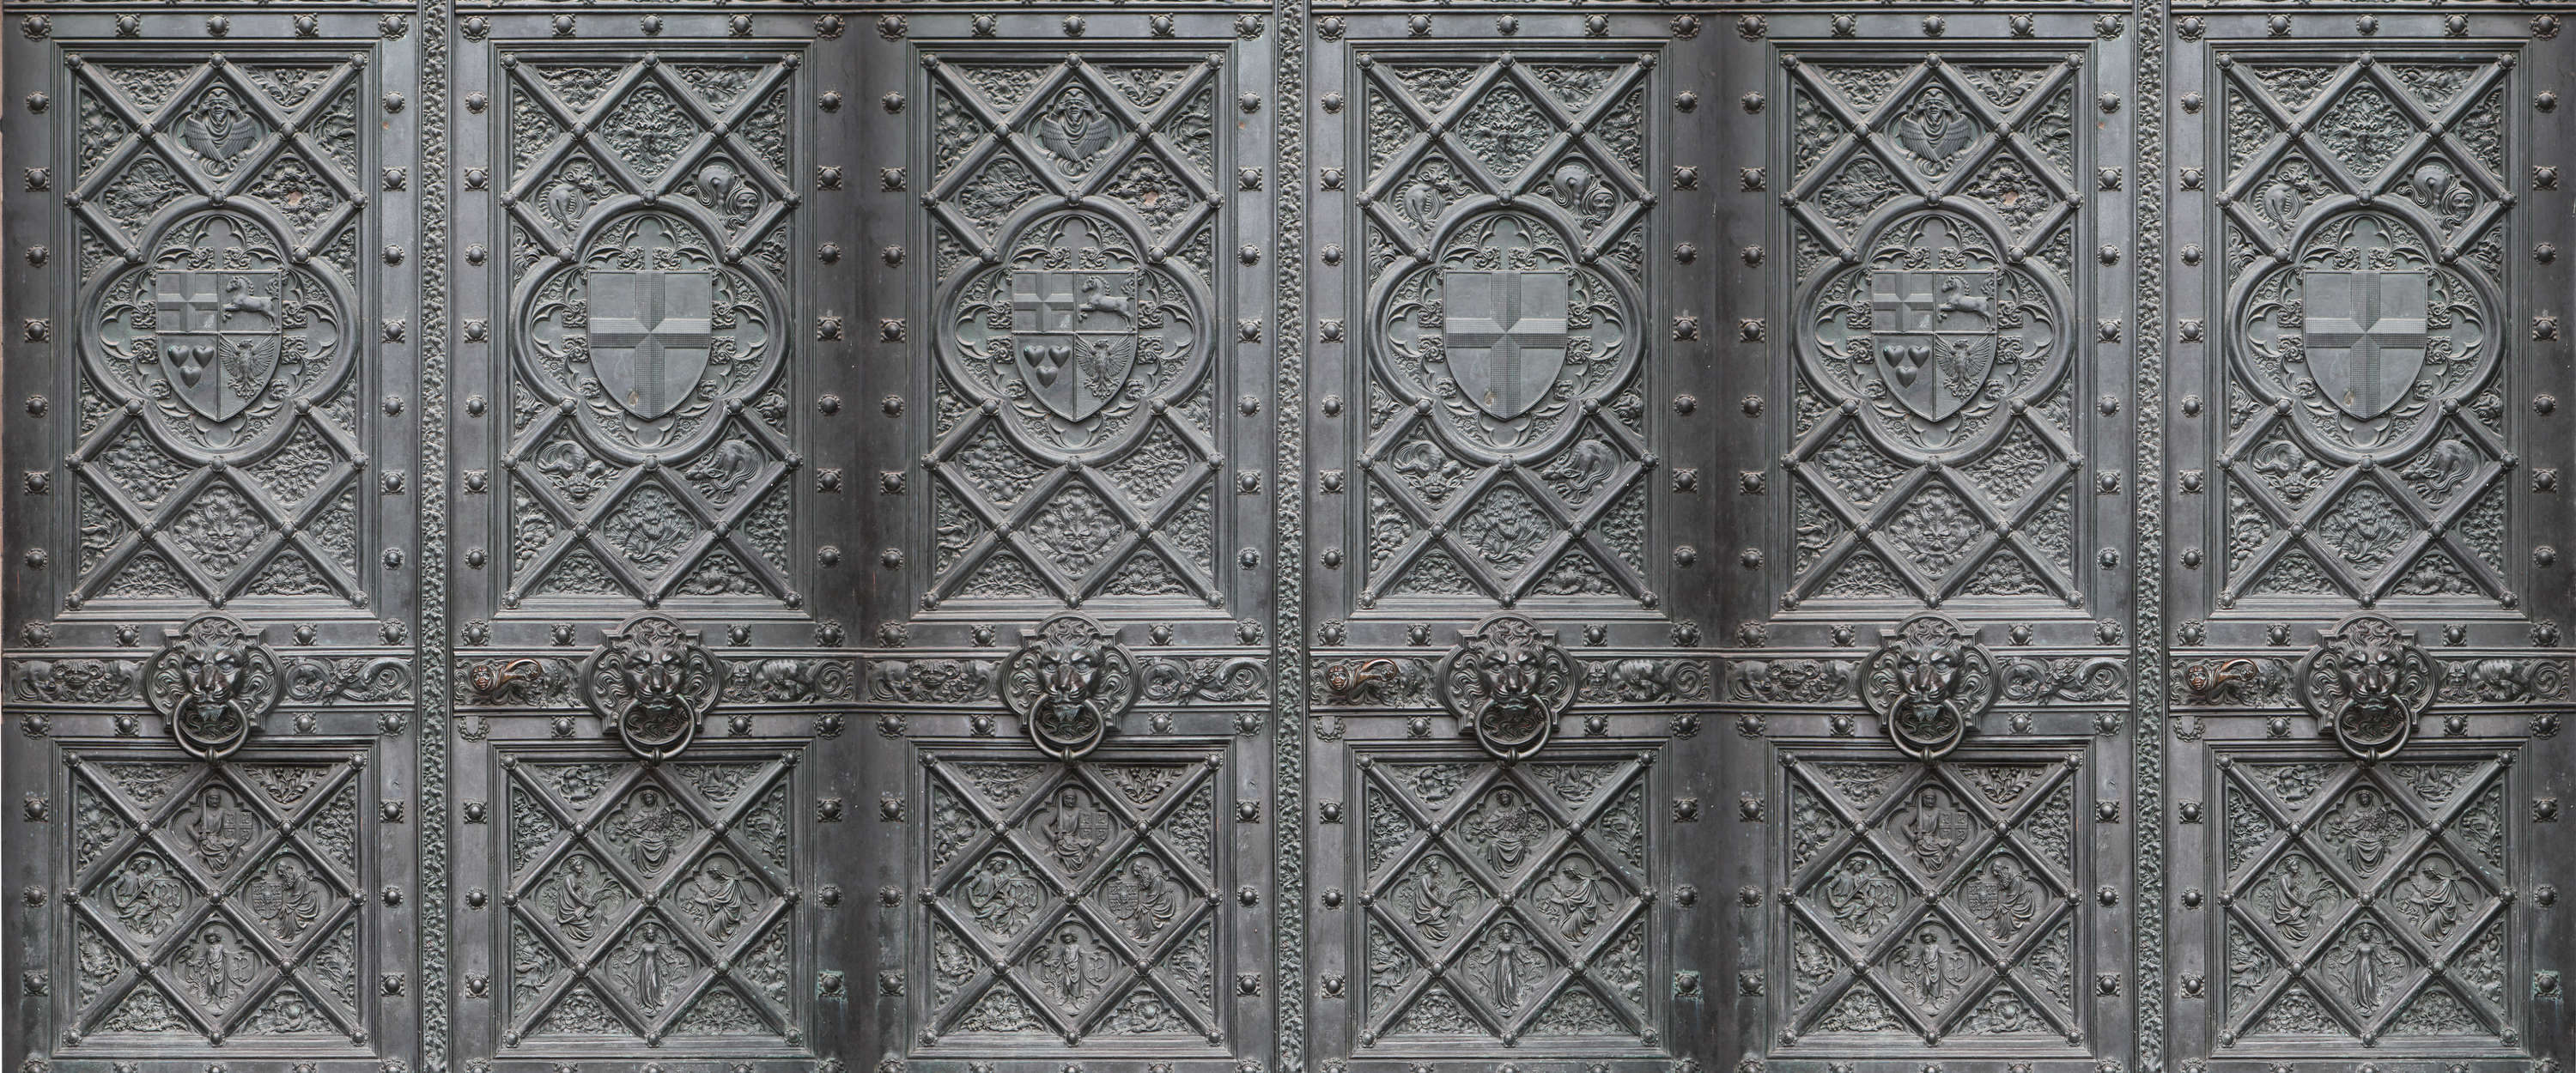             Carta da parati per porte in metallo in stile antico con motivi dettagliati
        